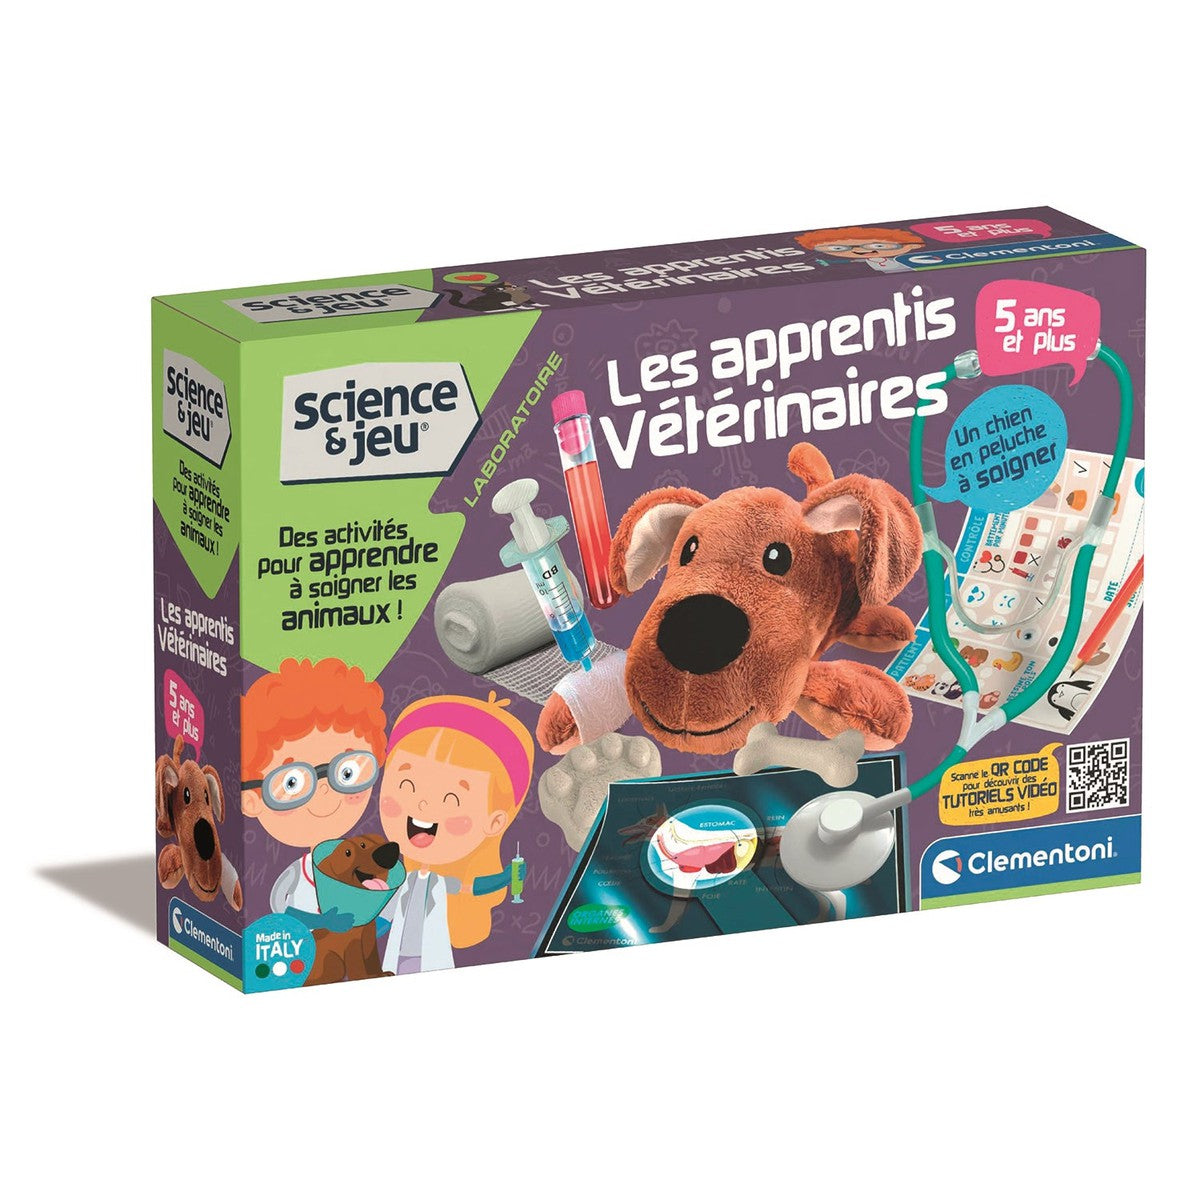 Jeux et jouets Scientifiques pour aimer et apprendre la science